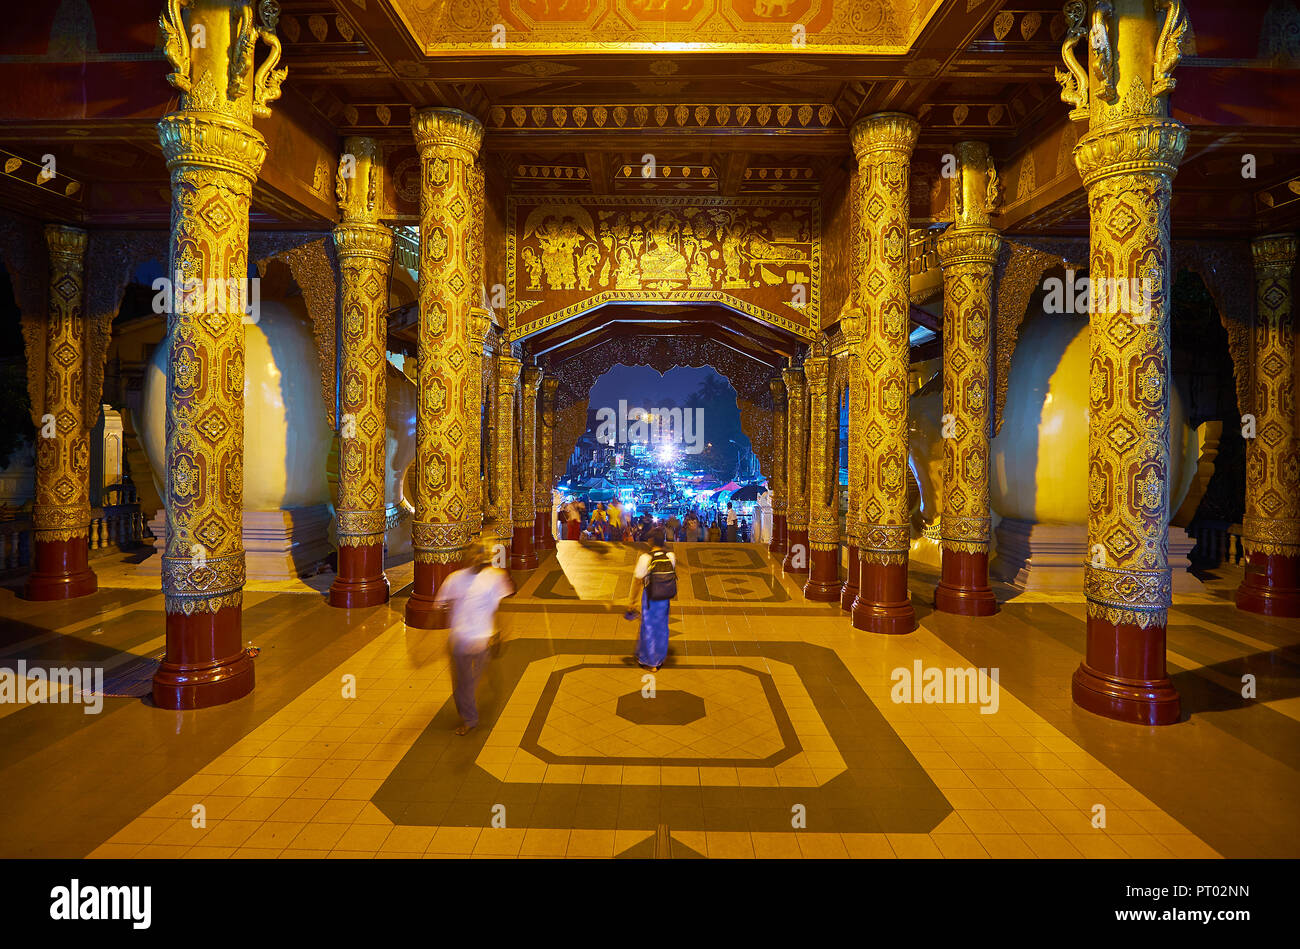 YANGON, MYANMAR - février 27, 2018 : la galerie couverte de la pagode Shwedagon porte de l'Orient avec de riches ornements en bois sculpté doré, décors, peinture Banque D'Images